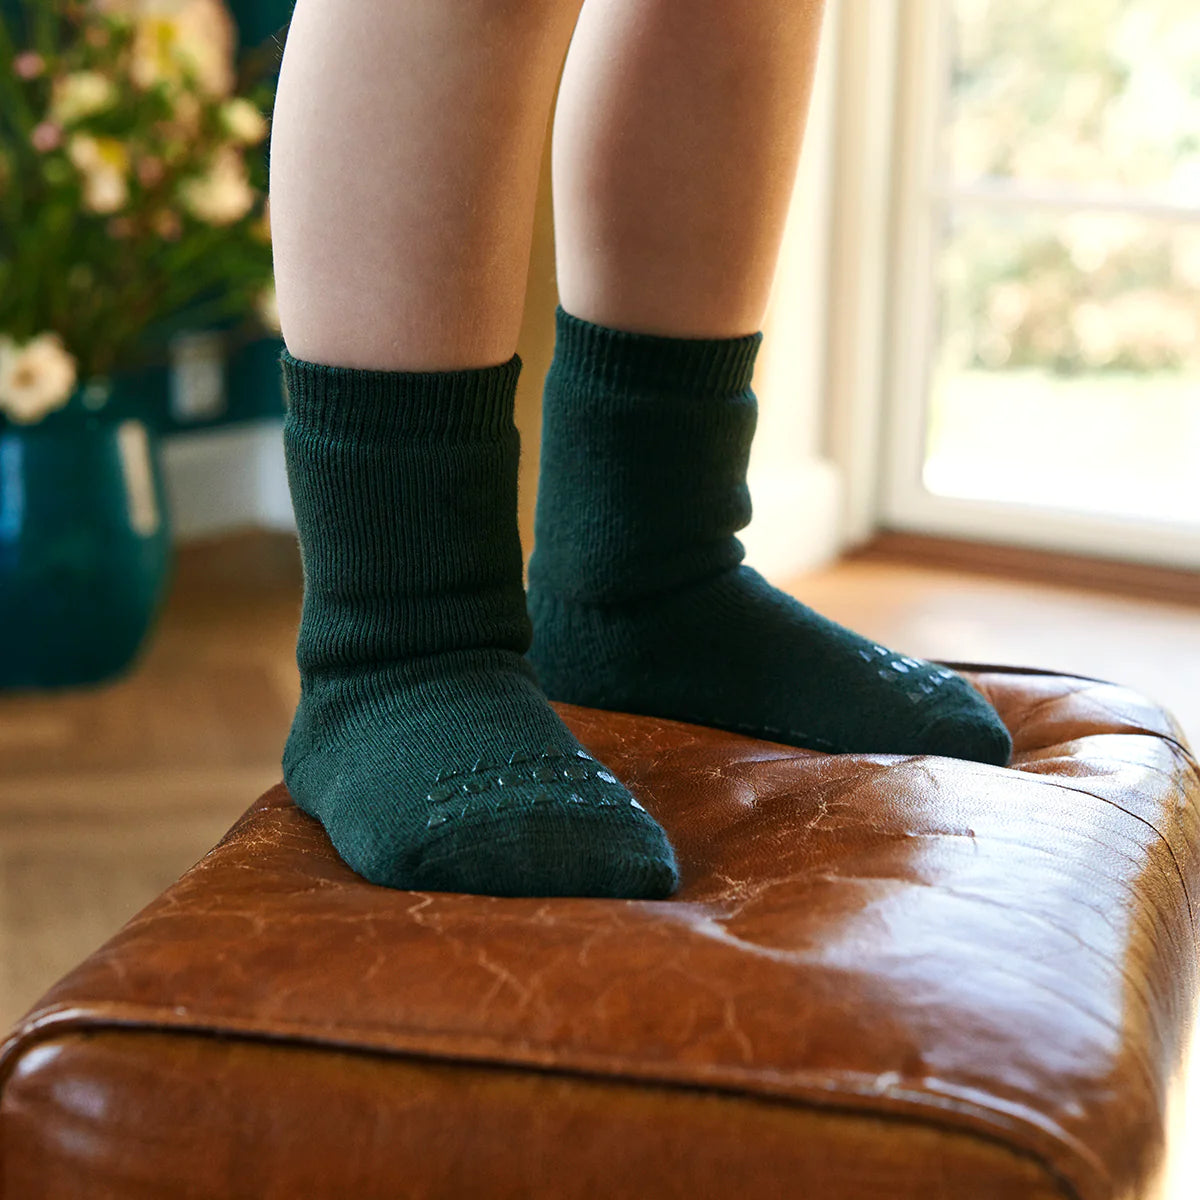 Gobabygo Rutschfeste Socken aus Baumwolle forest green